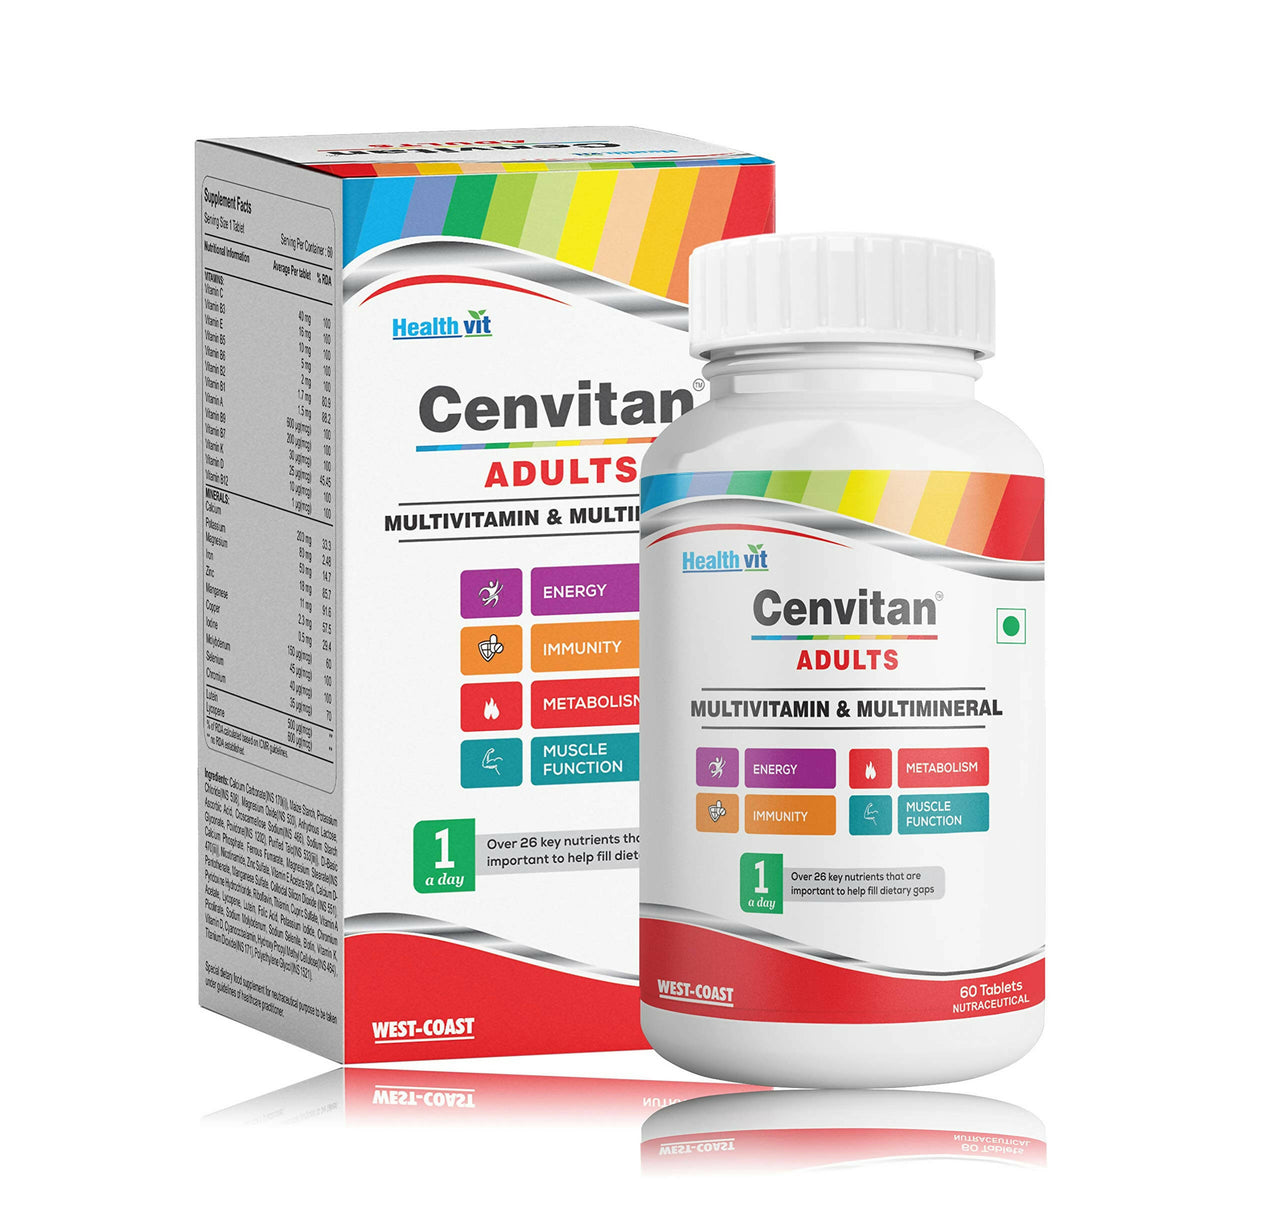 Healthvit Cenvitan Adults Multivitamin & Multimineral Tablets - Distacart